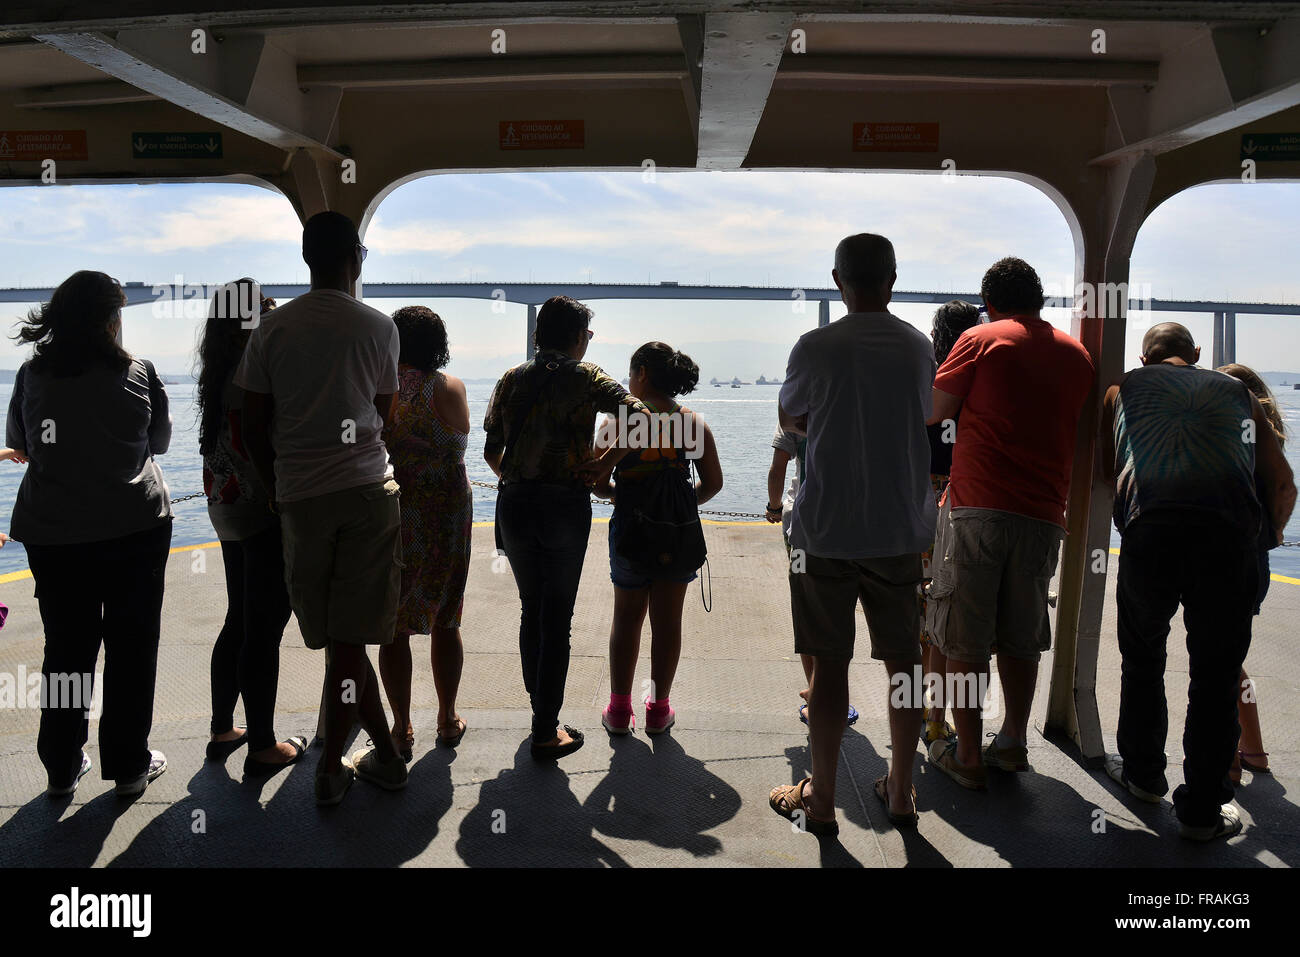 Los pasajeros observando el puente Río-Niterói en barco en la Bahía de Guanabara Foto de stock